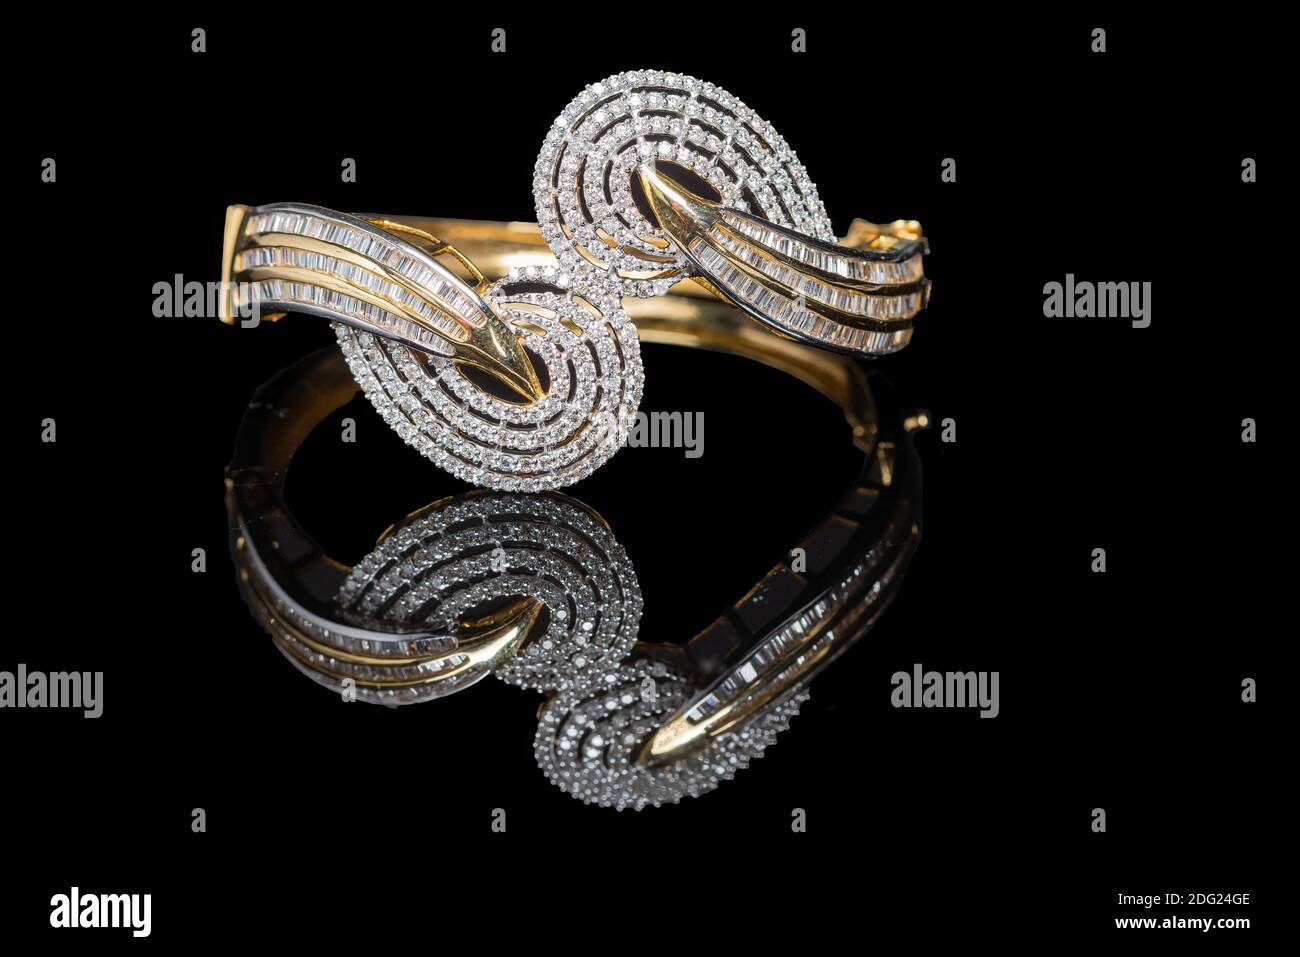 Magnifique bracelet en diamant avec réflexion sur noir Banque D'Images